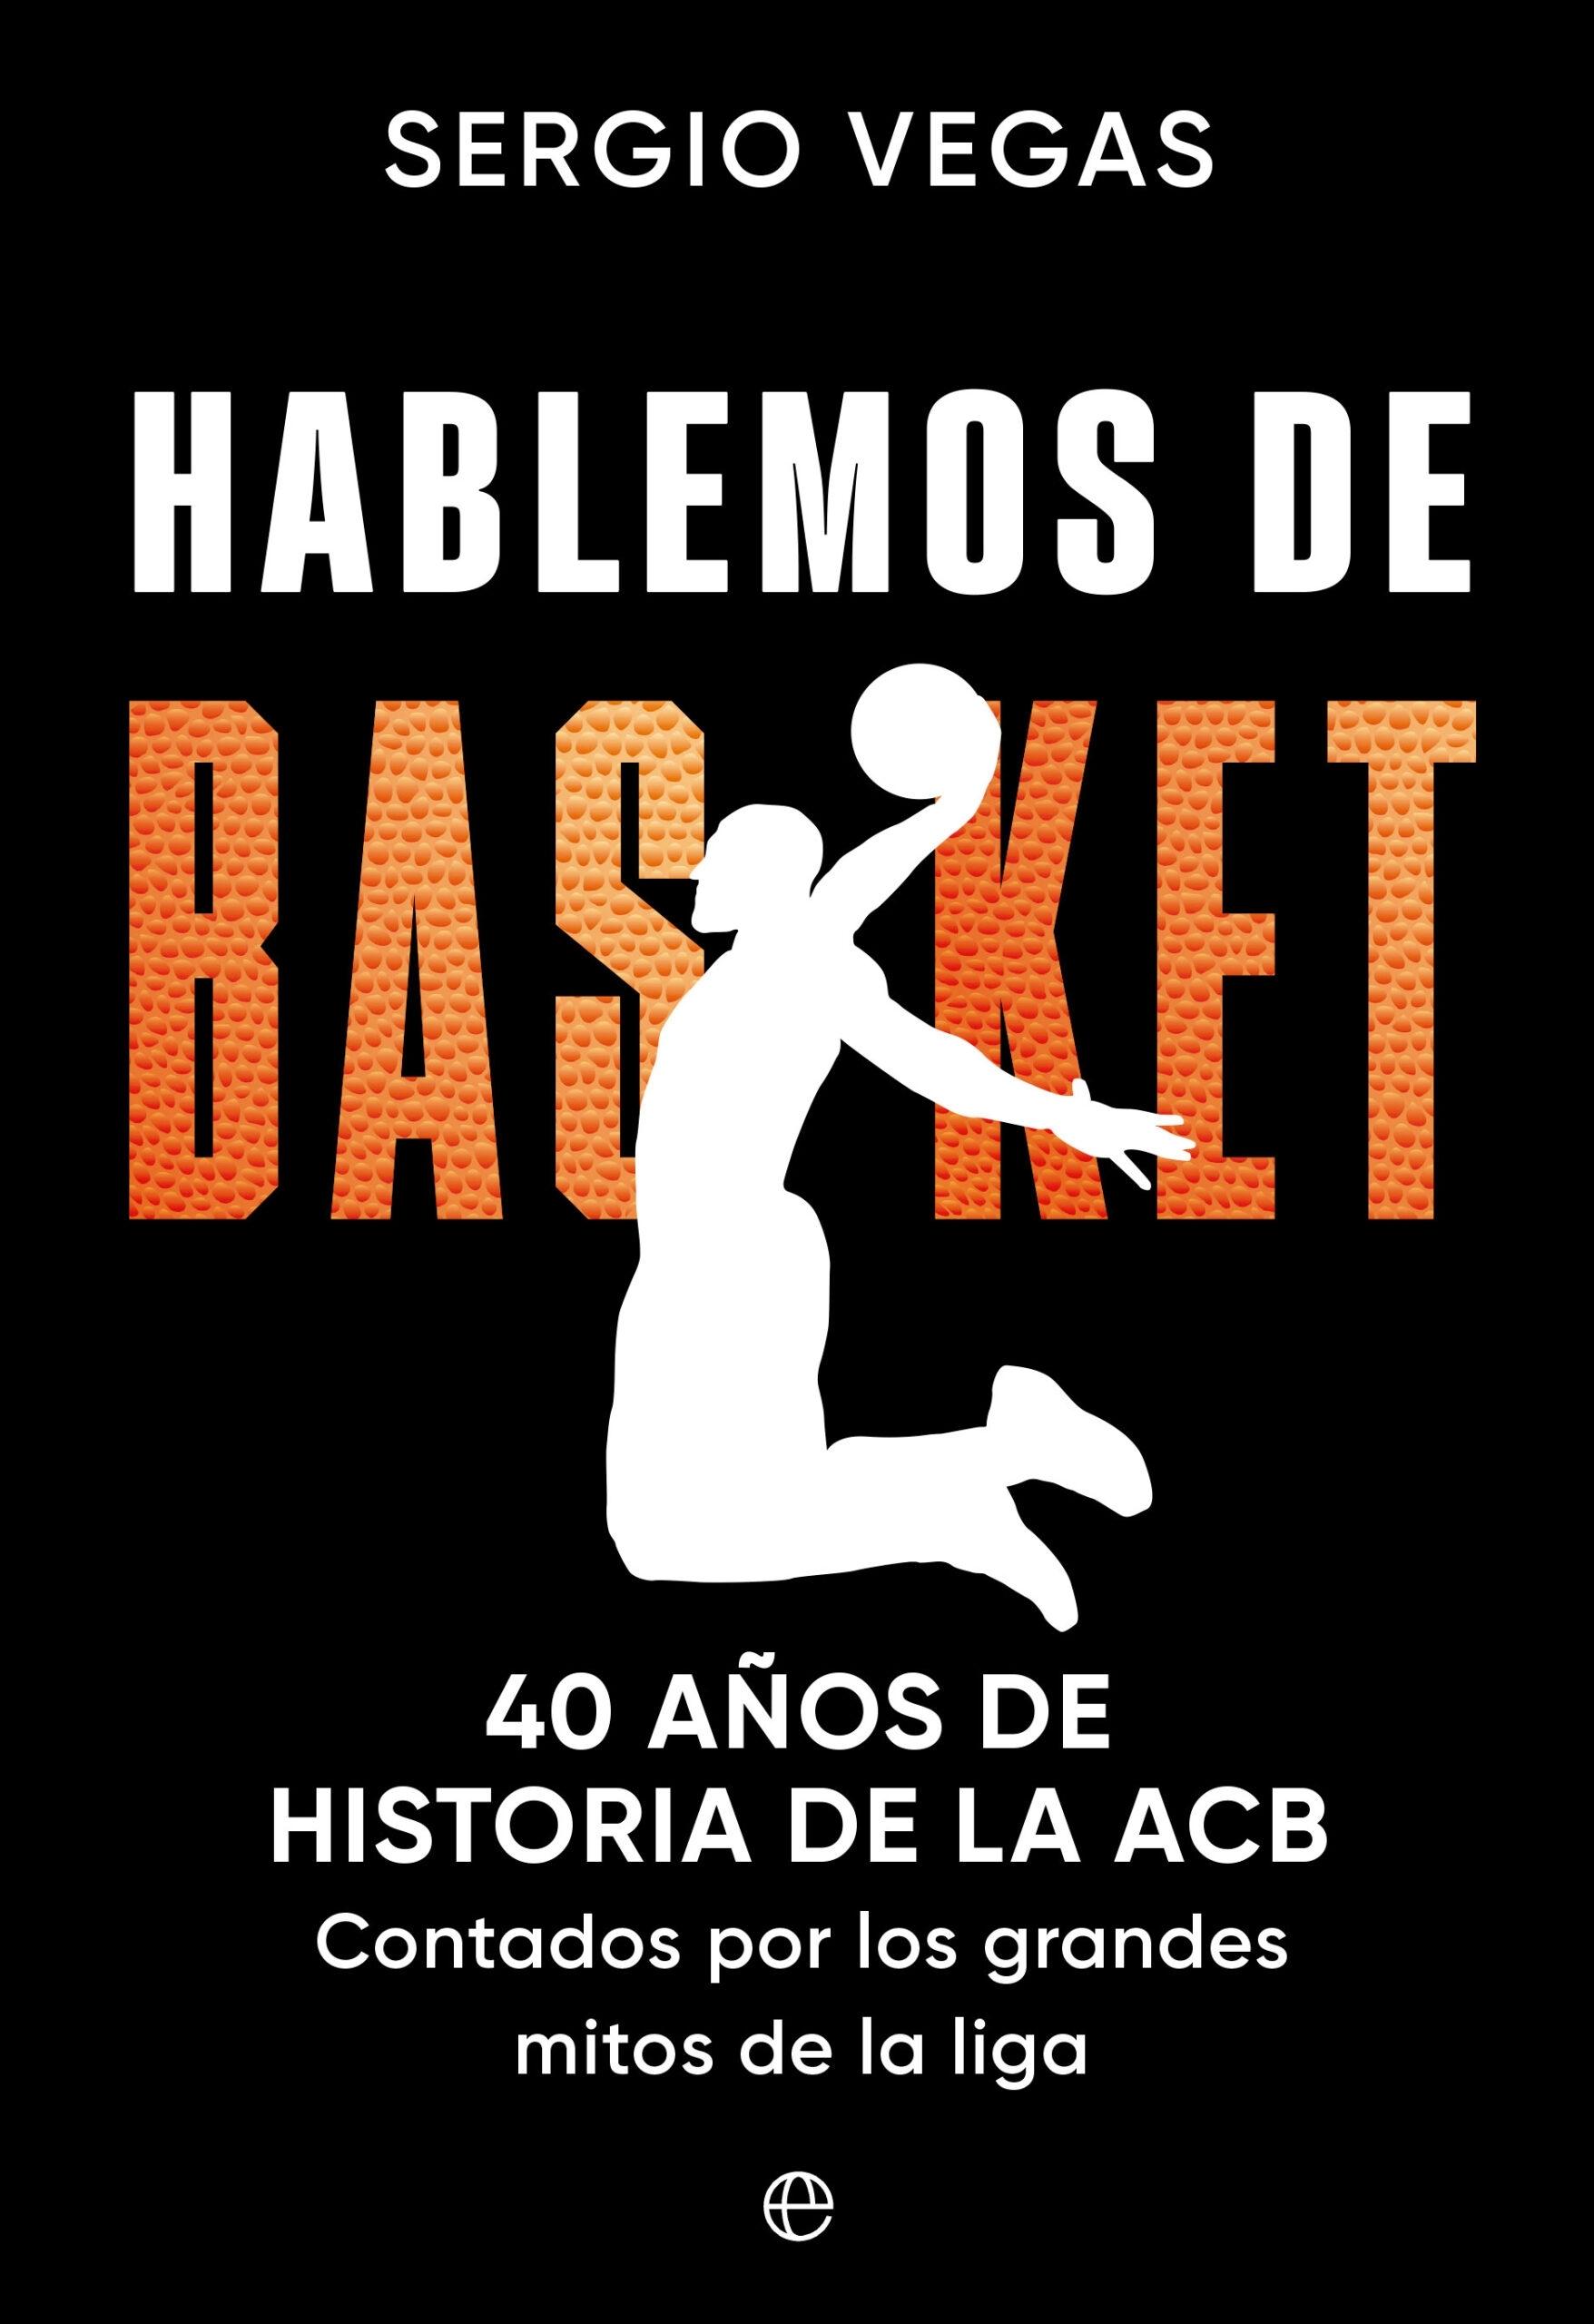 Hablemos de Basket "40 Años de Historia de la Acb Contados por los Grandes Mitos de la Liga". 